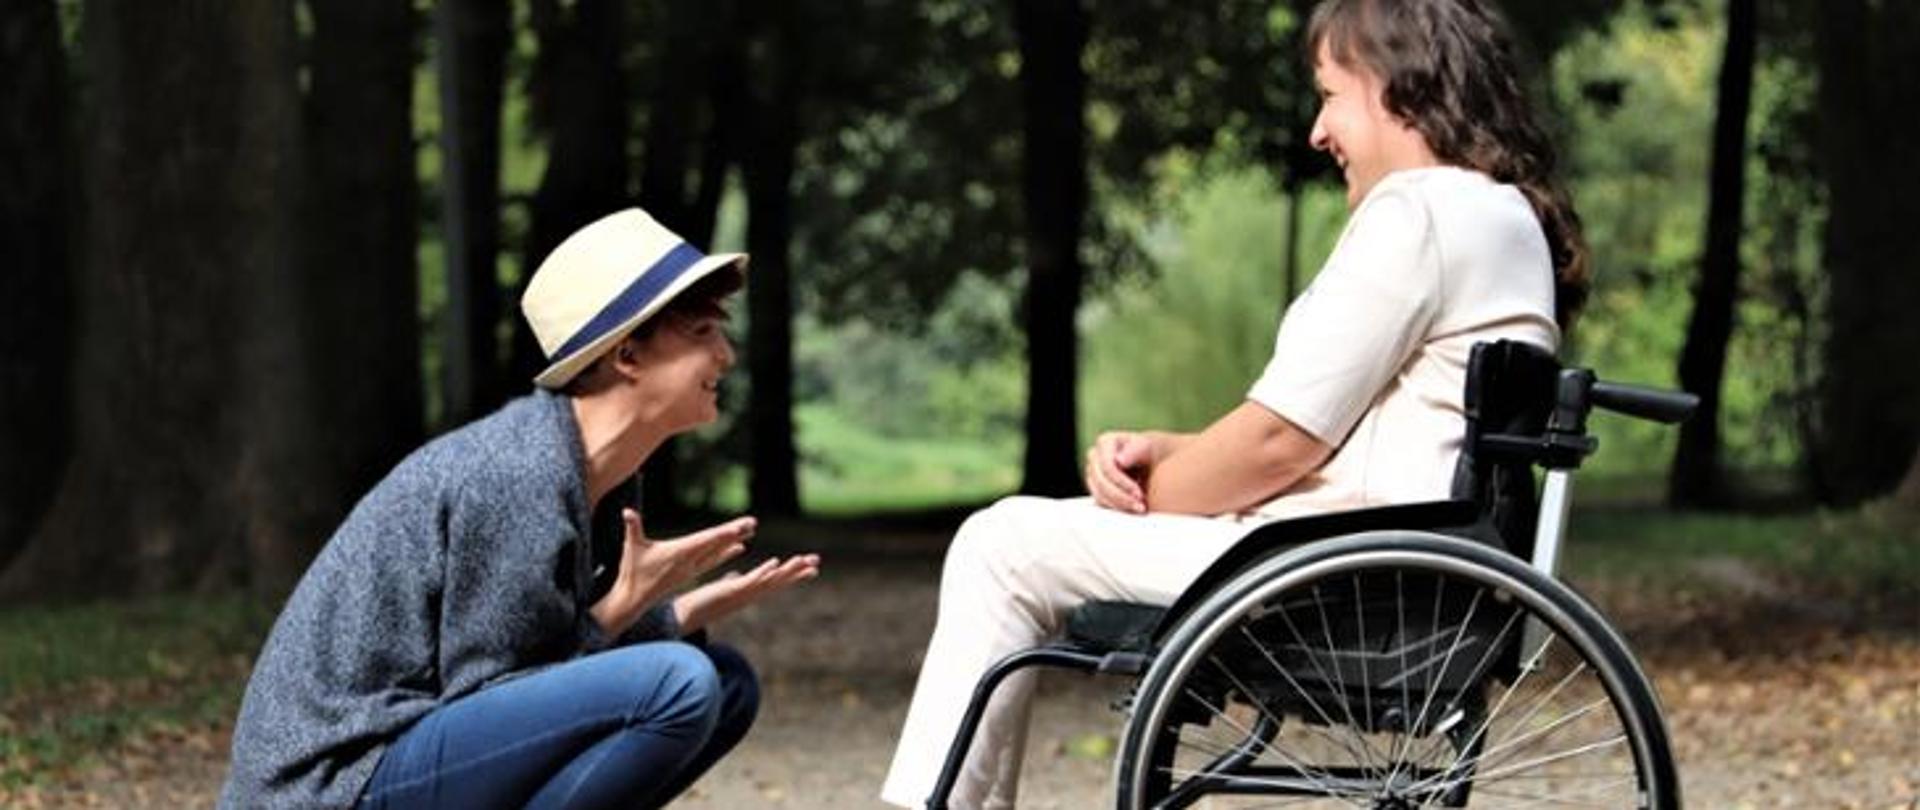 Kobieta na wózku inwalidzkim rozmawia z przyjaciółką